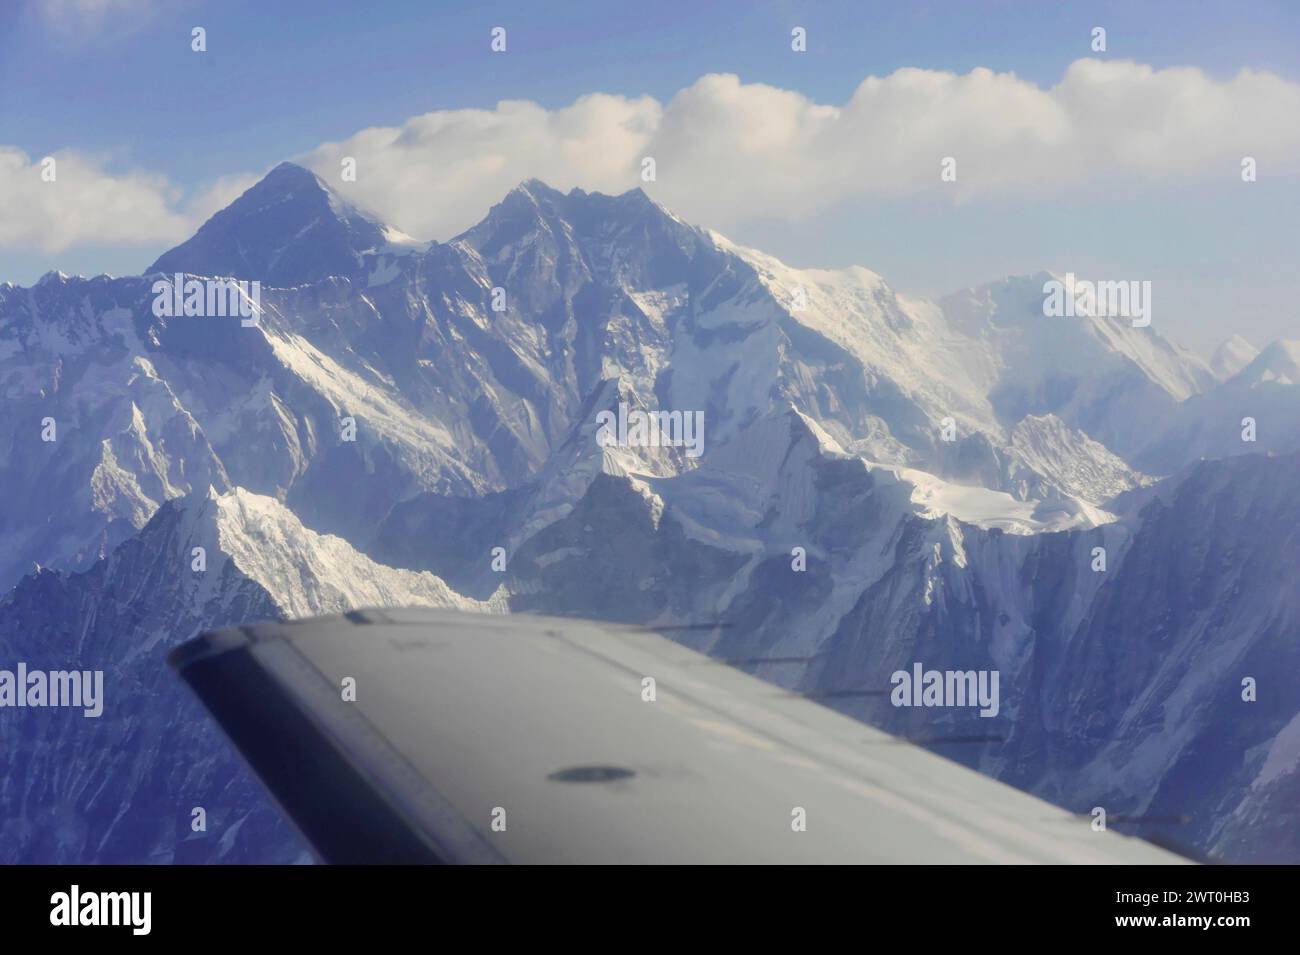 Vista aerea di una vetta innevata e delle catene montuose circostanti, impressioni dal grande volo panoramico lungo i giganti dell'Himalaya Foto Stock